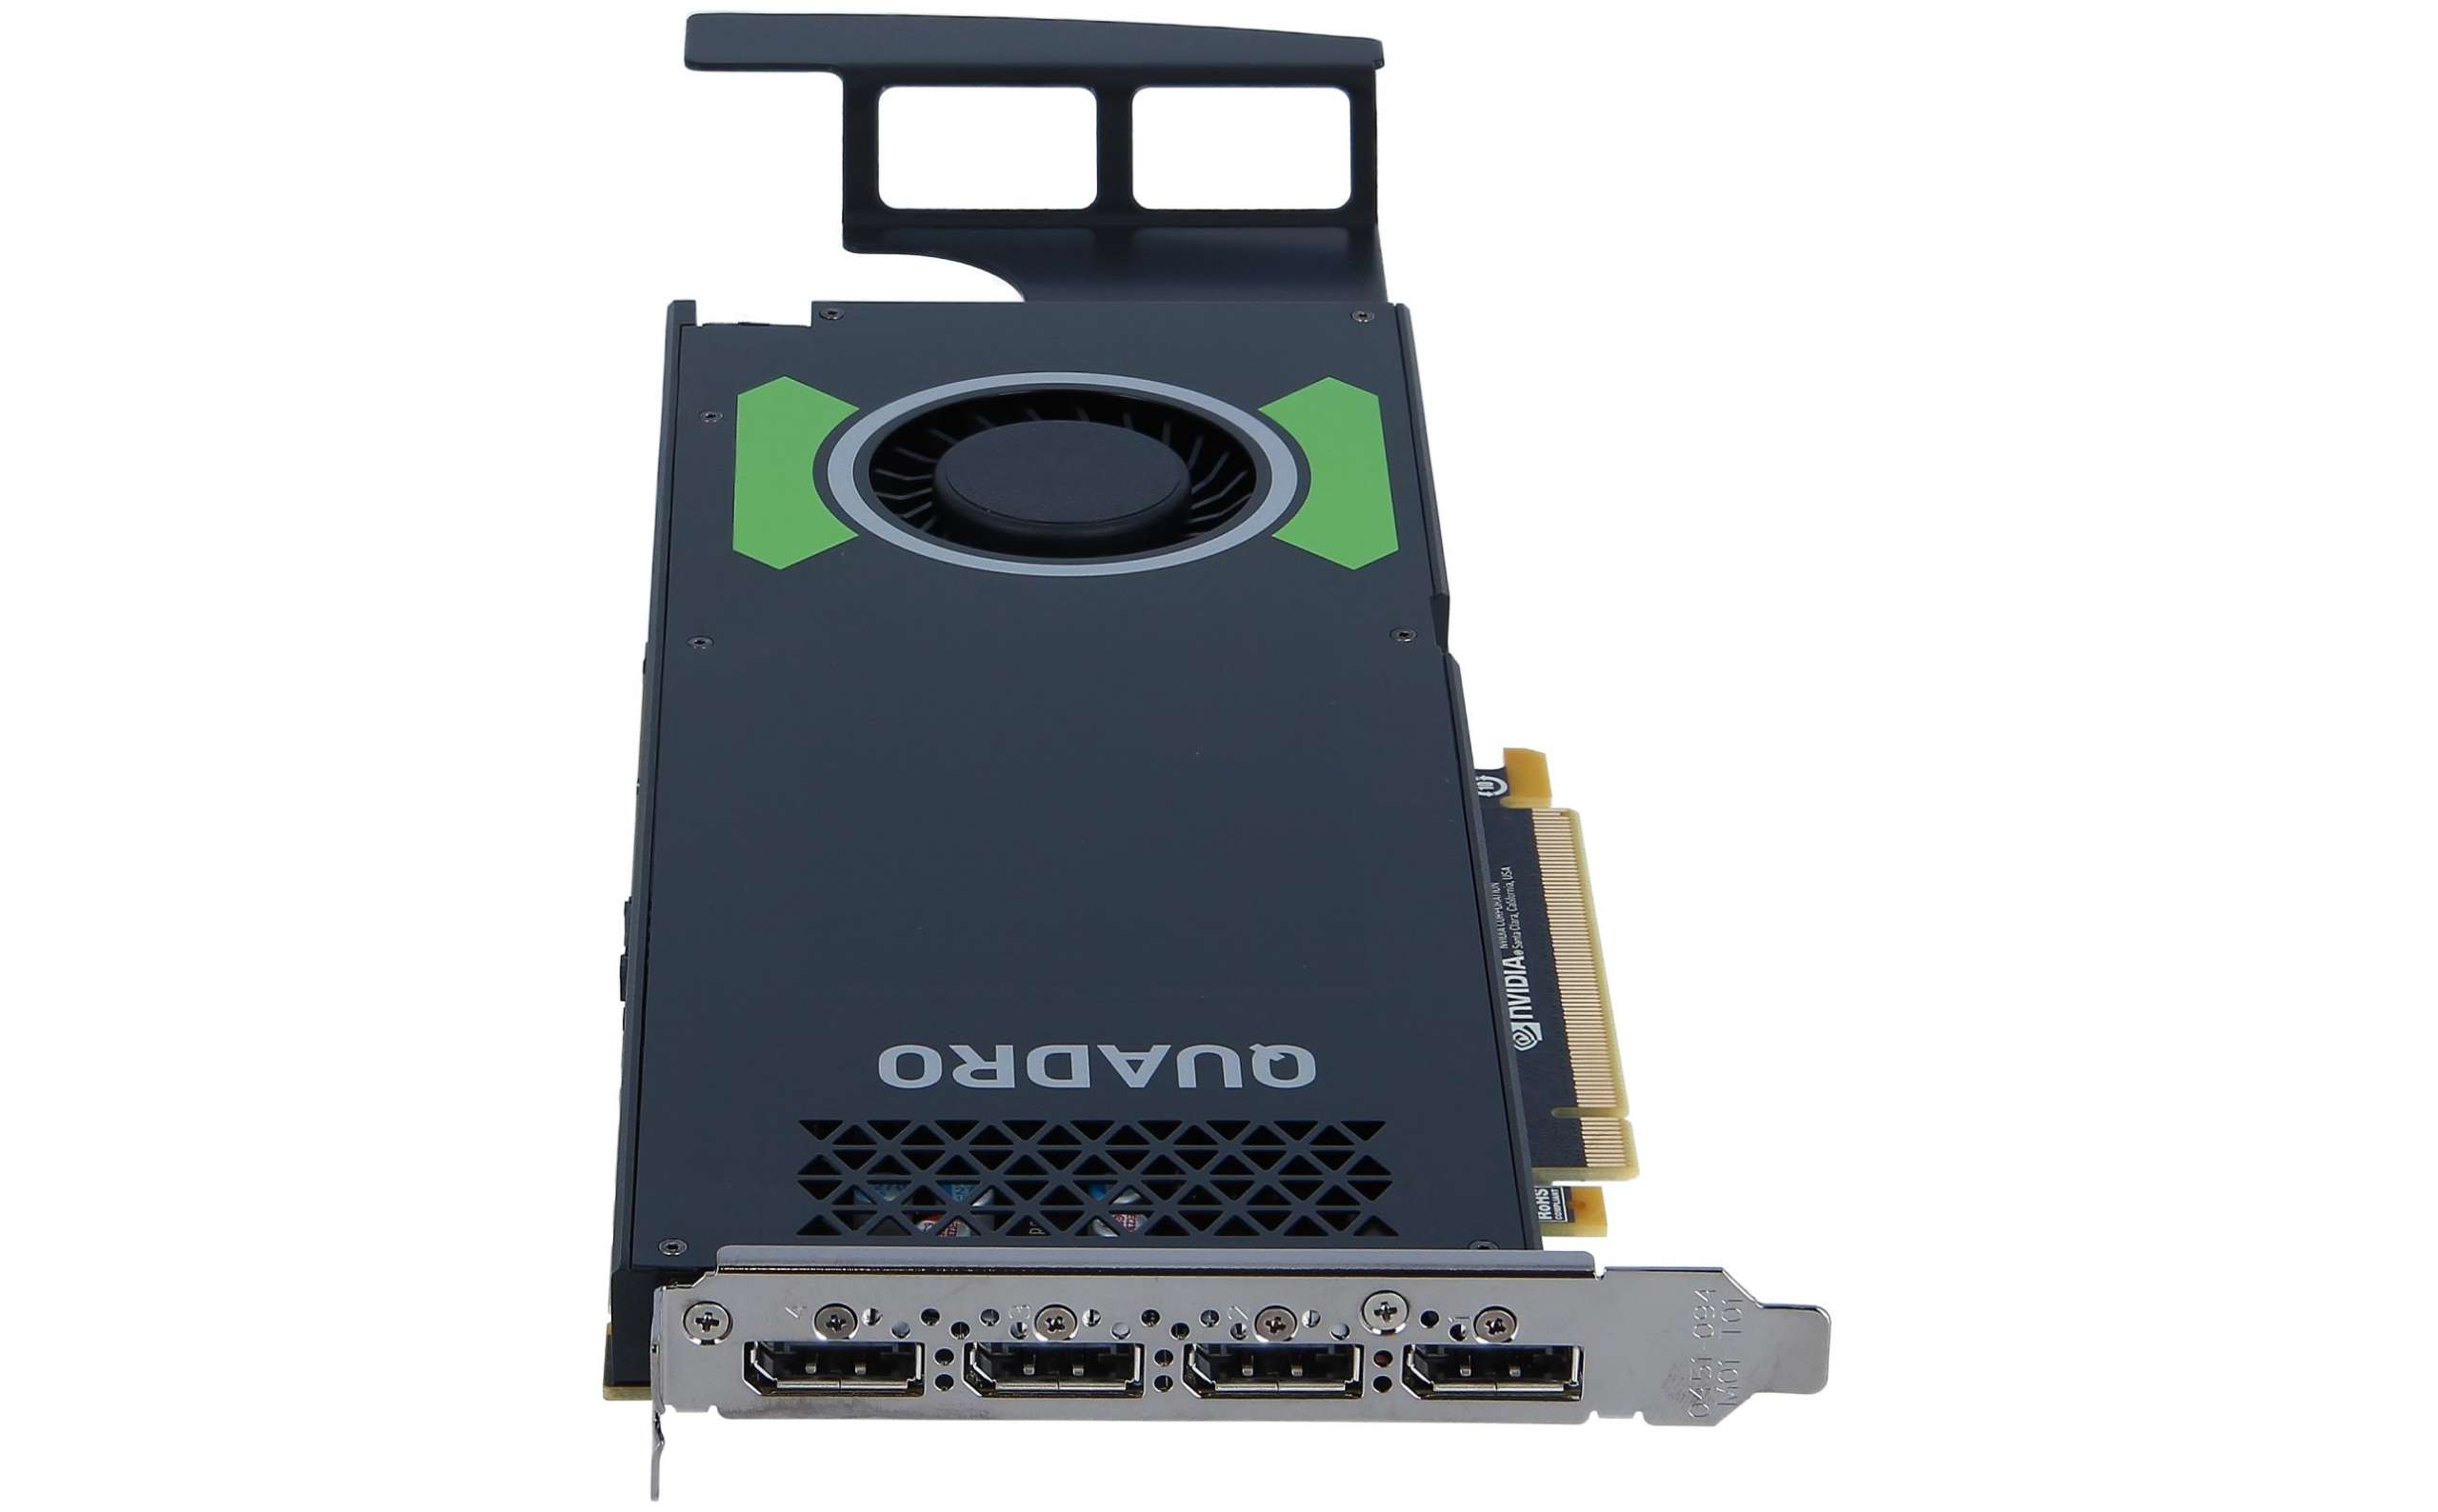 Quadro p4000. Quadro p 4000 GPU - 8gb. NVIDIA p2004. NVIDIA Quadro p4000 игры.